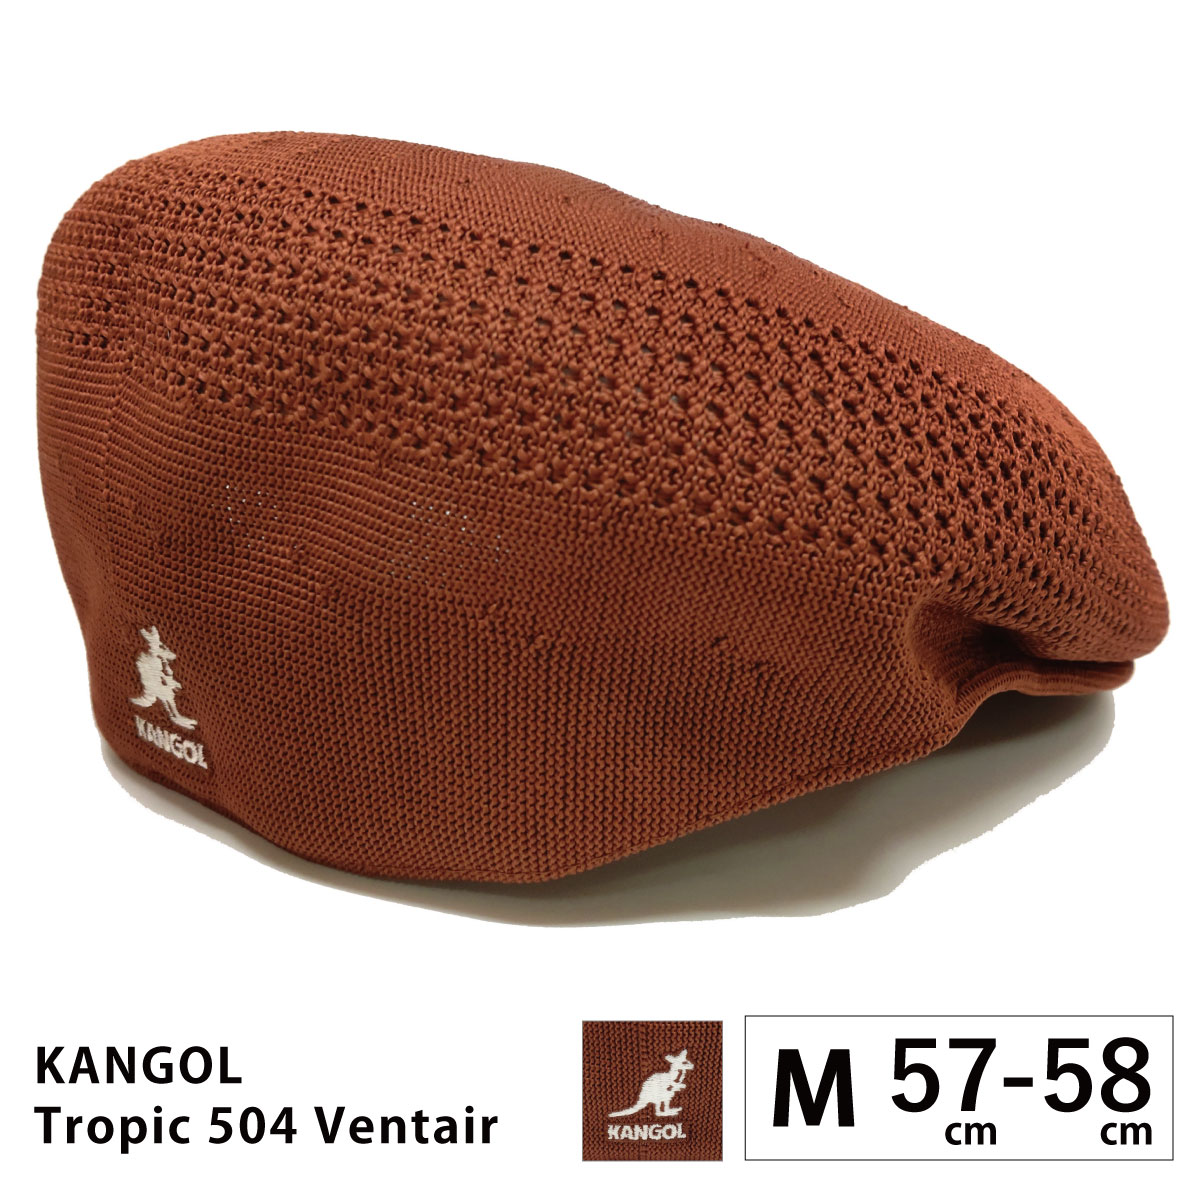 KANGOL ハンチング帽 メンズ 父の日 帽子 大きい TROPIC 504 VENTAIR 57cm-64cm メッシュ 涼しい  kan-195-169001 カンゴール 正規取扱